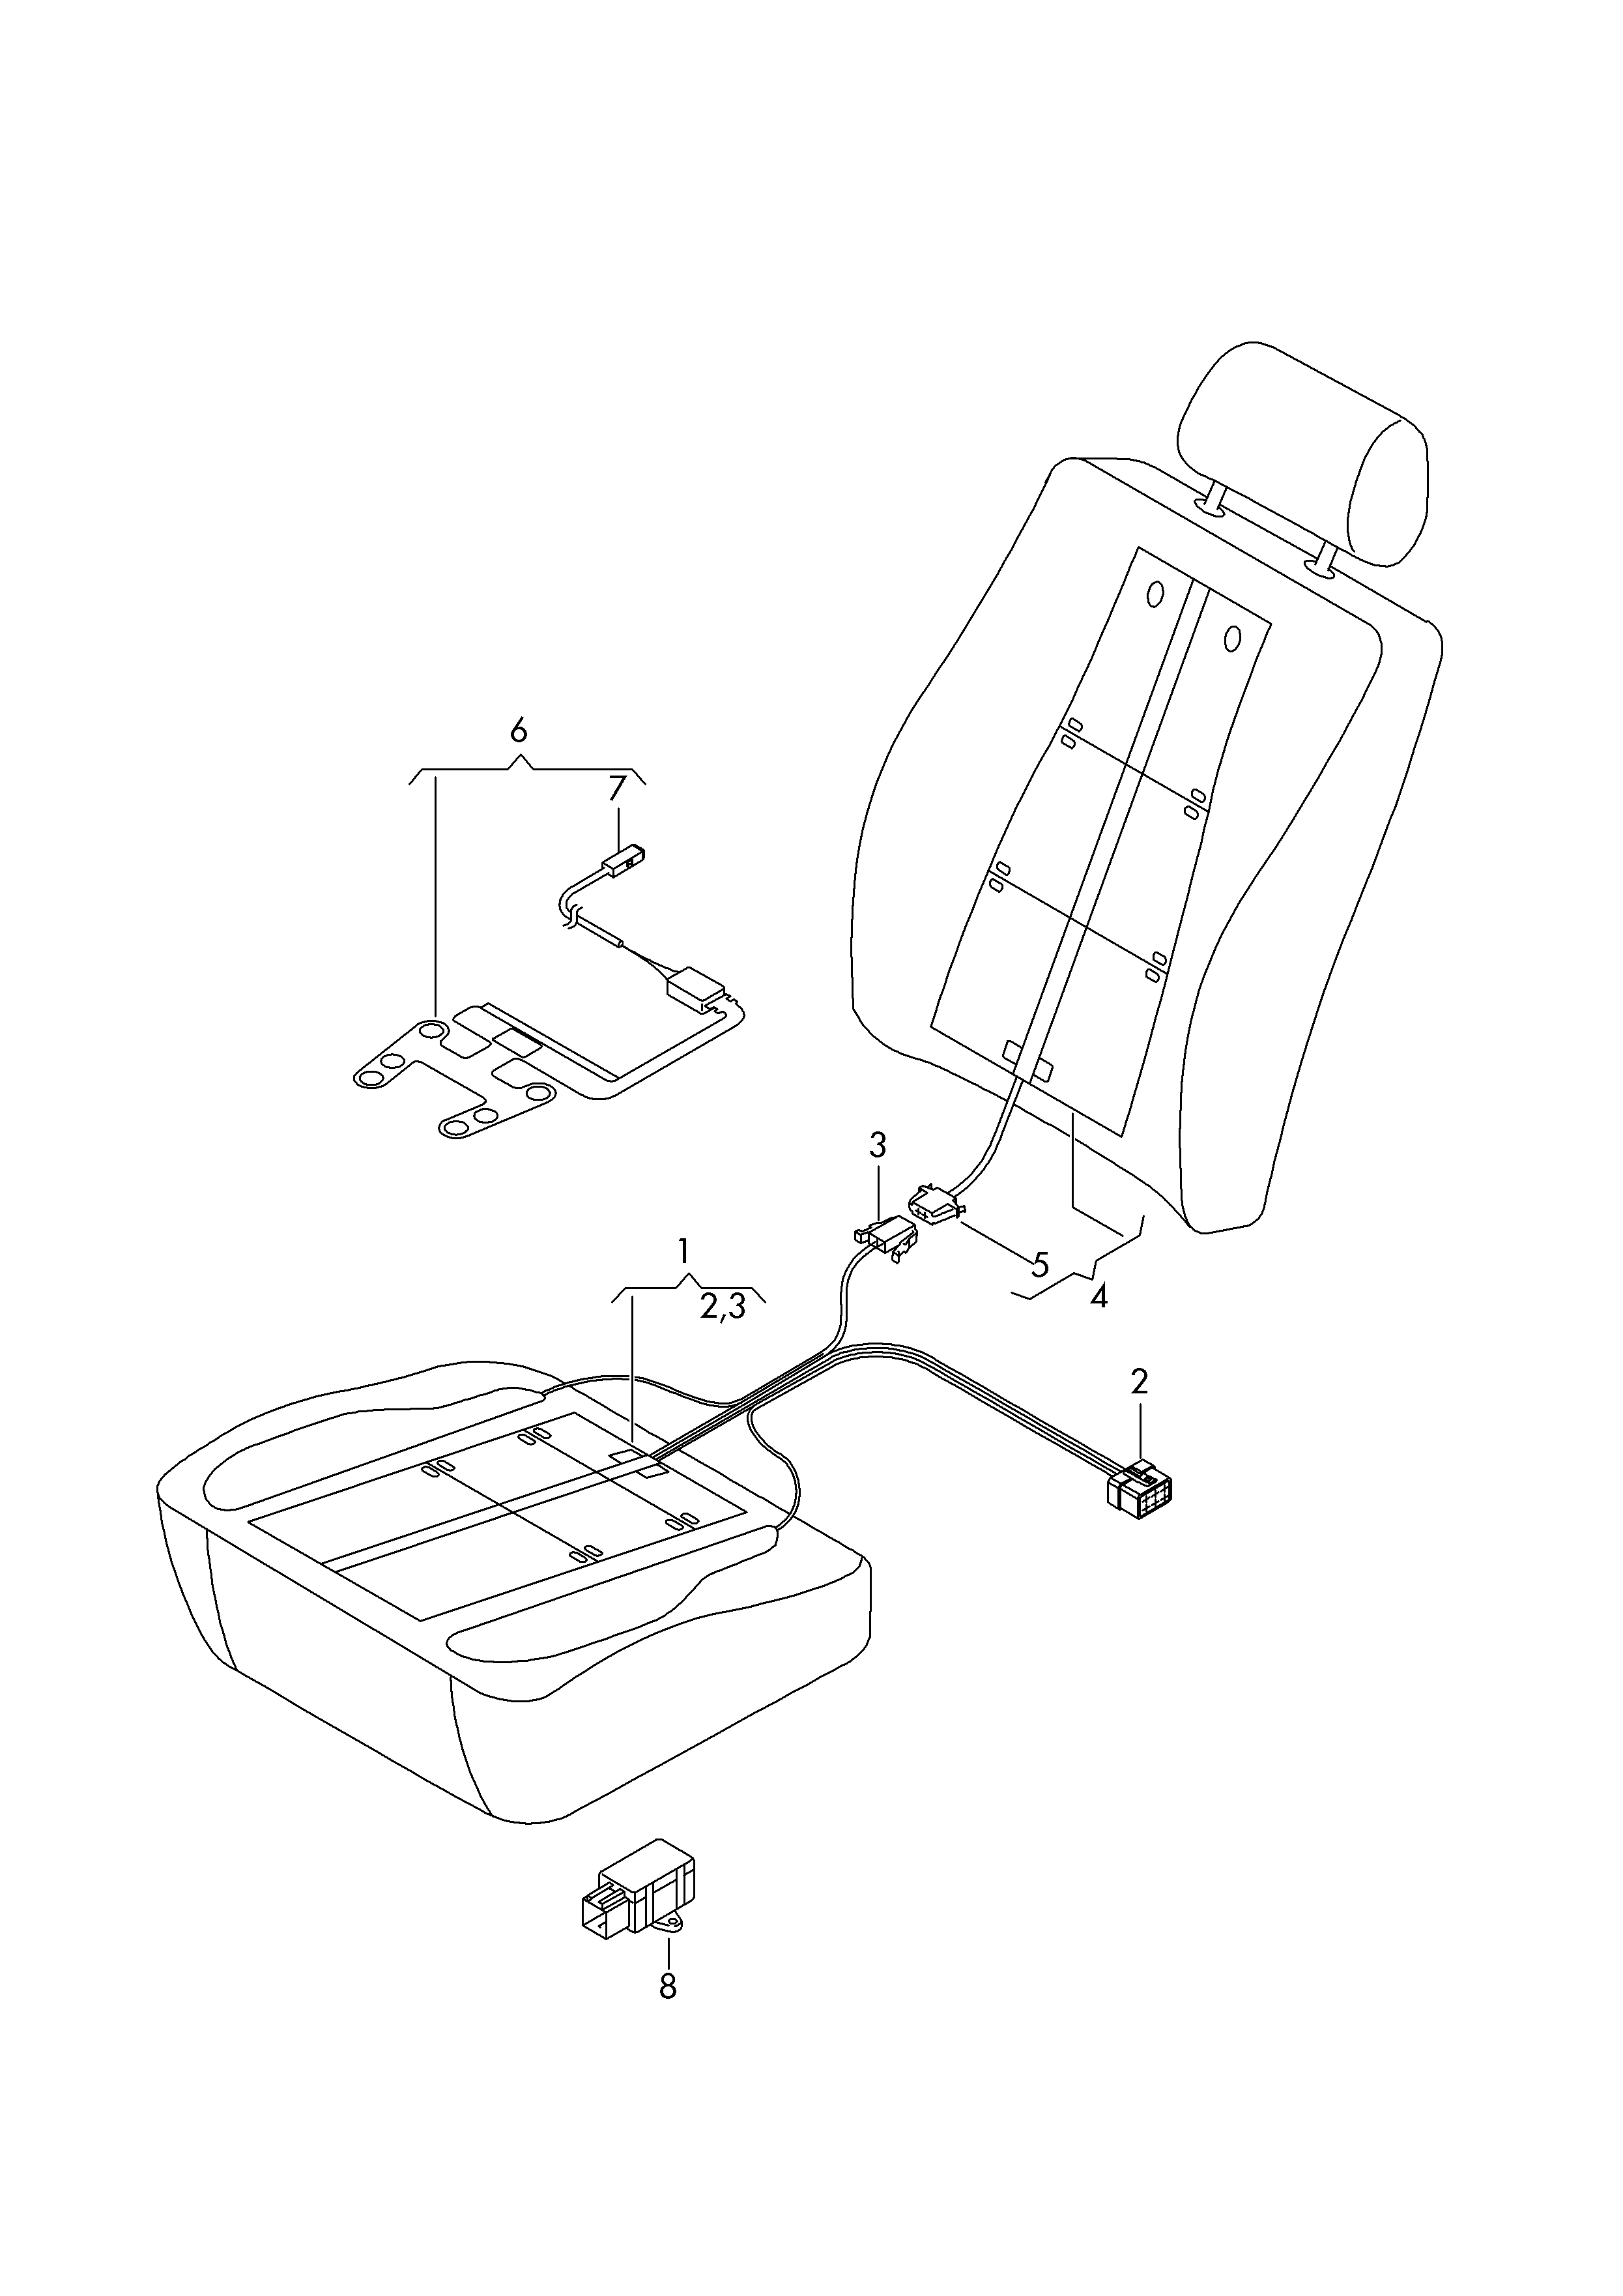 座椅和靠背
加热元件; 占用识别
用于座椅 - Audi A1(A1)  